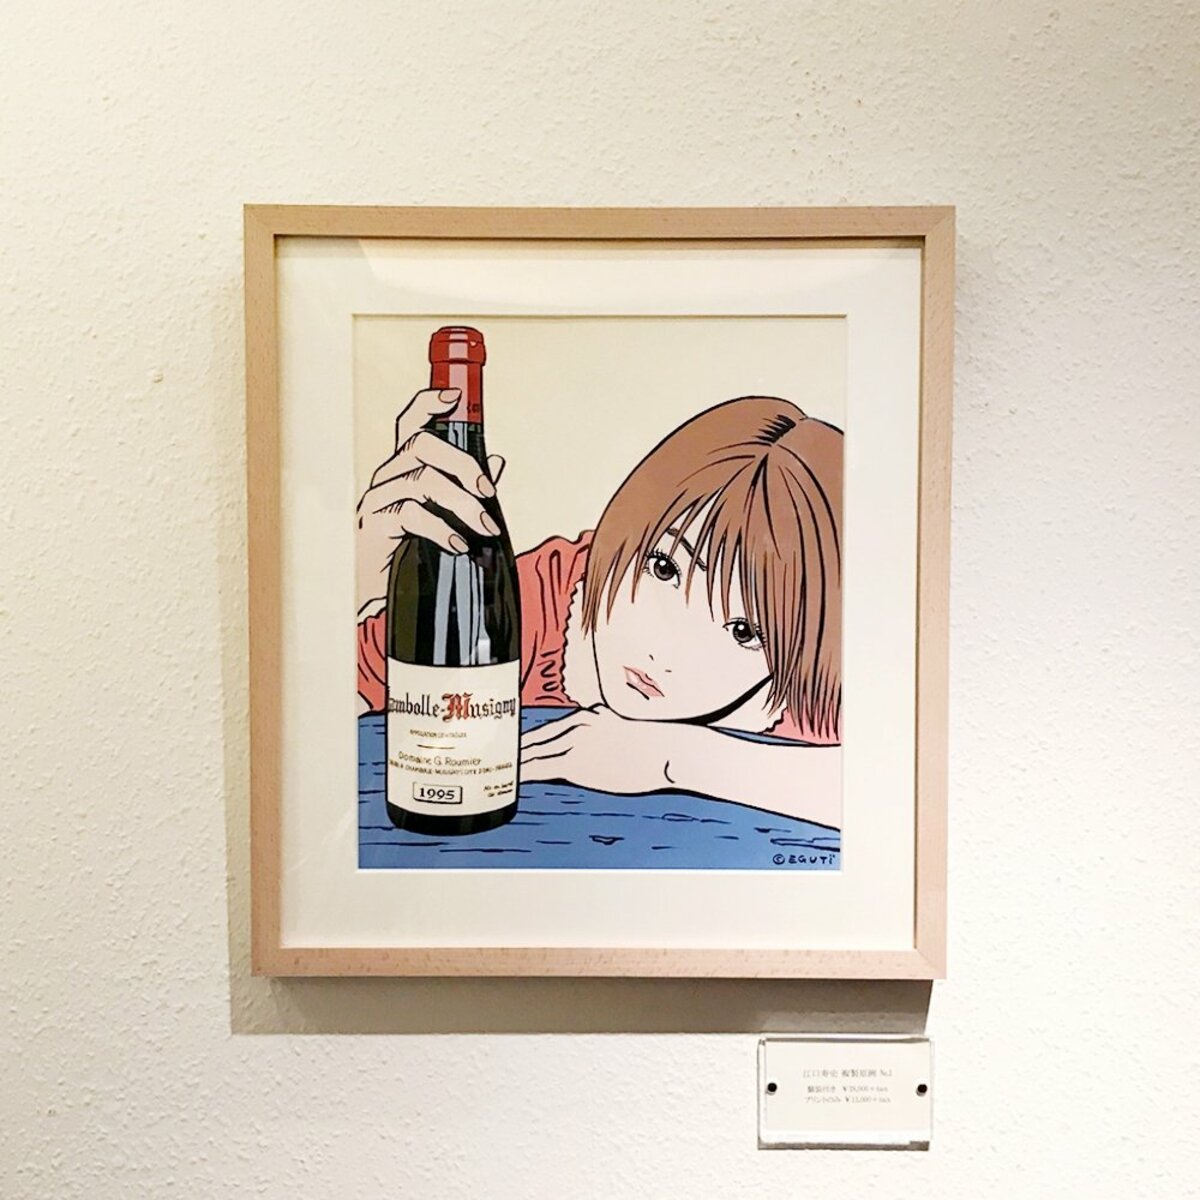 江口寿史 Real Wine Guide 2018「表紙イラスト複製原画」の展示販売を 